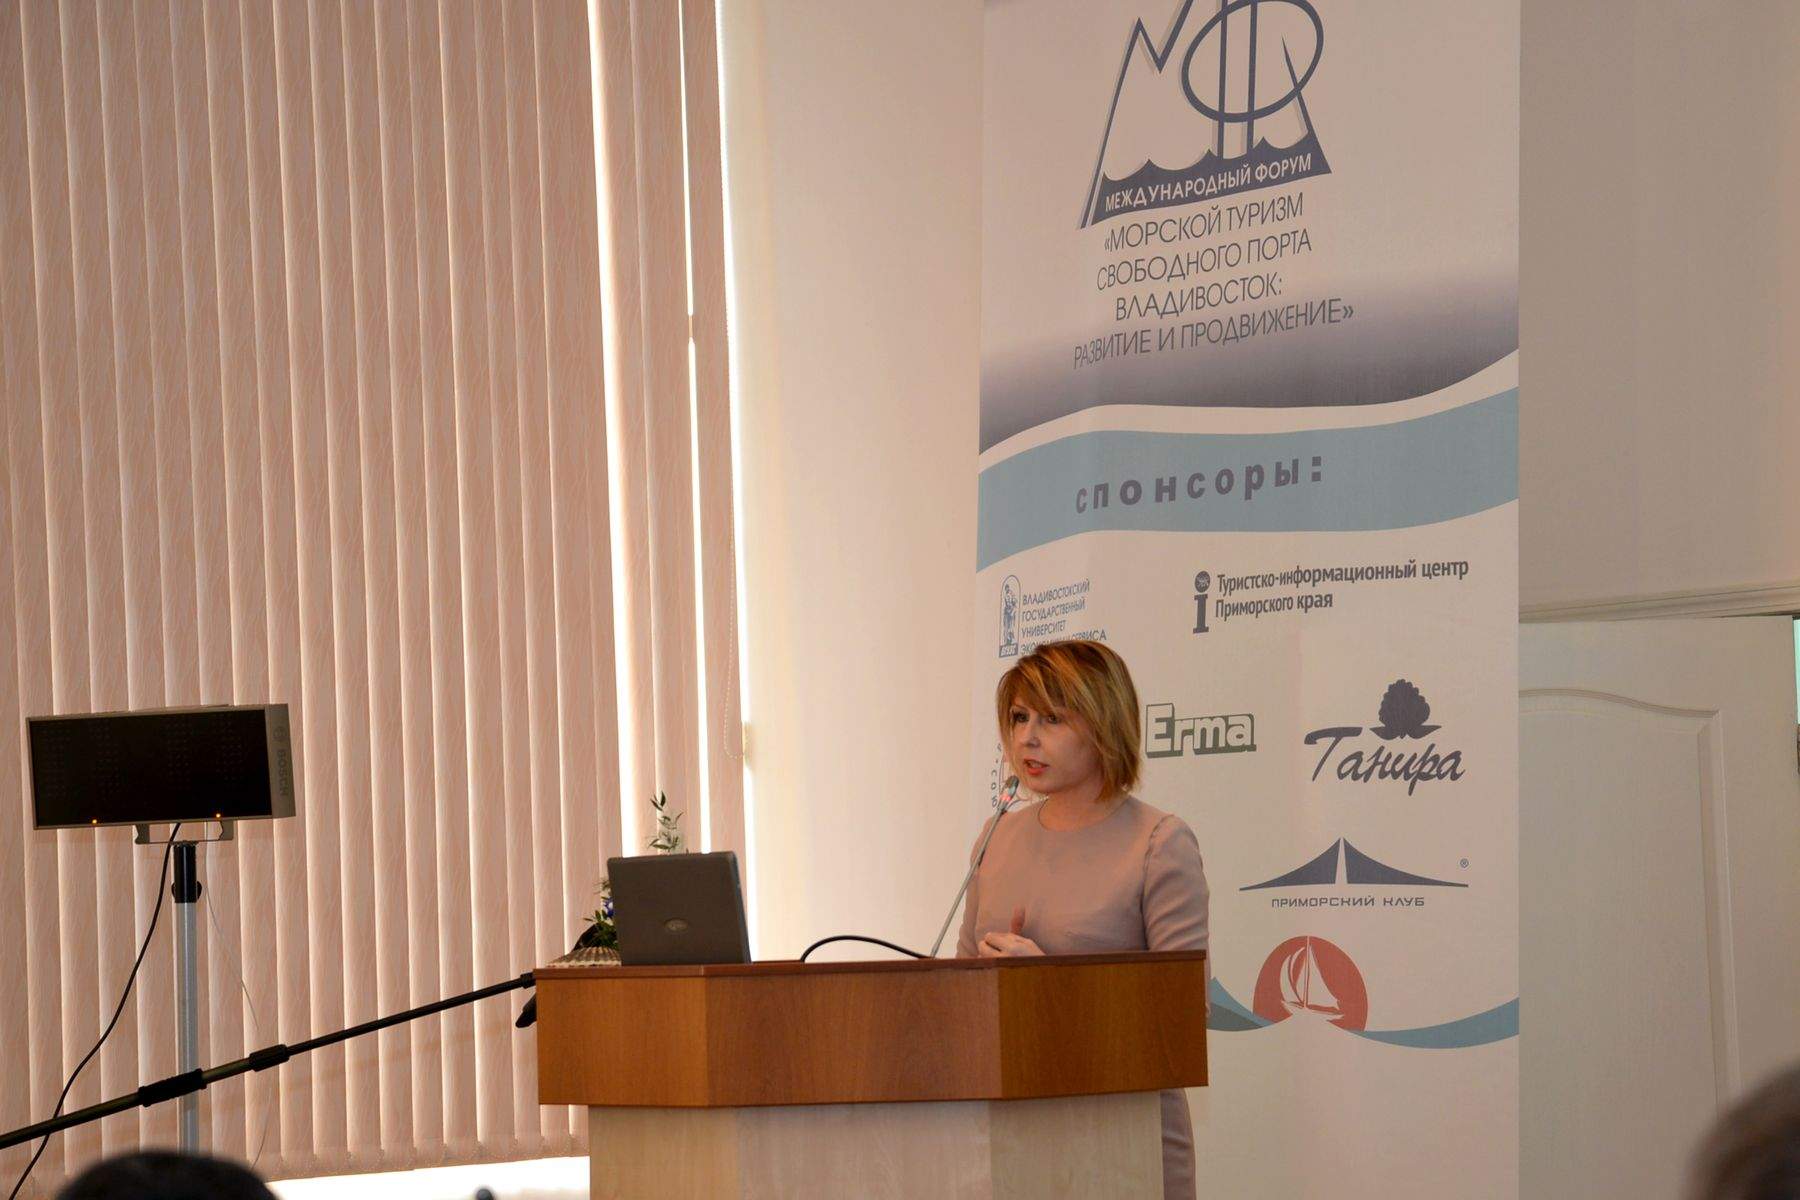 Во ВГУЭС впервые прошел Международный форум «Морской туризм Свободного порта Владивосток: развитие и продвижение»